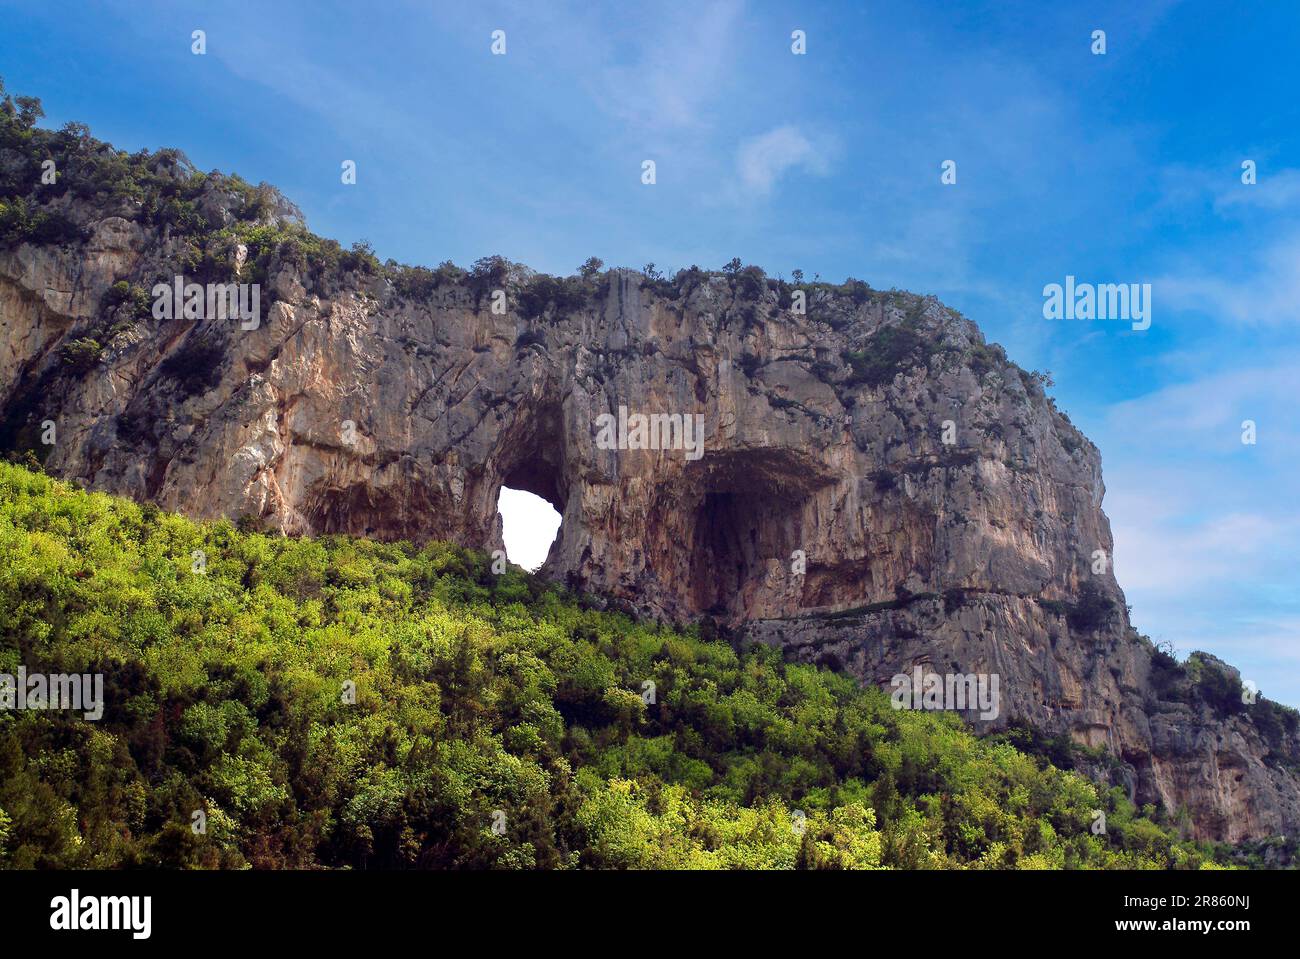 Italia Campania Costiera Amalfitana ( Costa de Amalfi )- Positano - El agujero en la montaña en Montepertuso se dice que fue causado por la virgen que, desafiada por el diablo, puso un dedo en la roca, Haciendo un agujero en él y haciendo que el Maligno se hunda en él Foto de stock